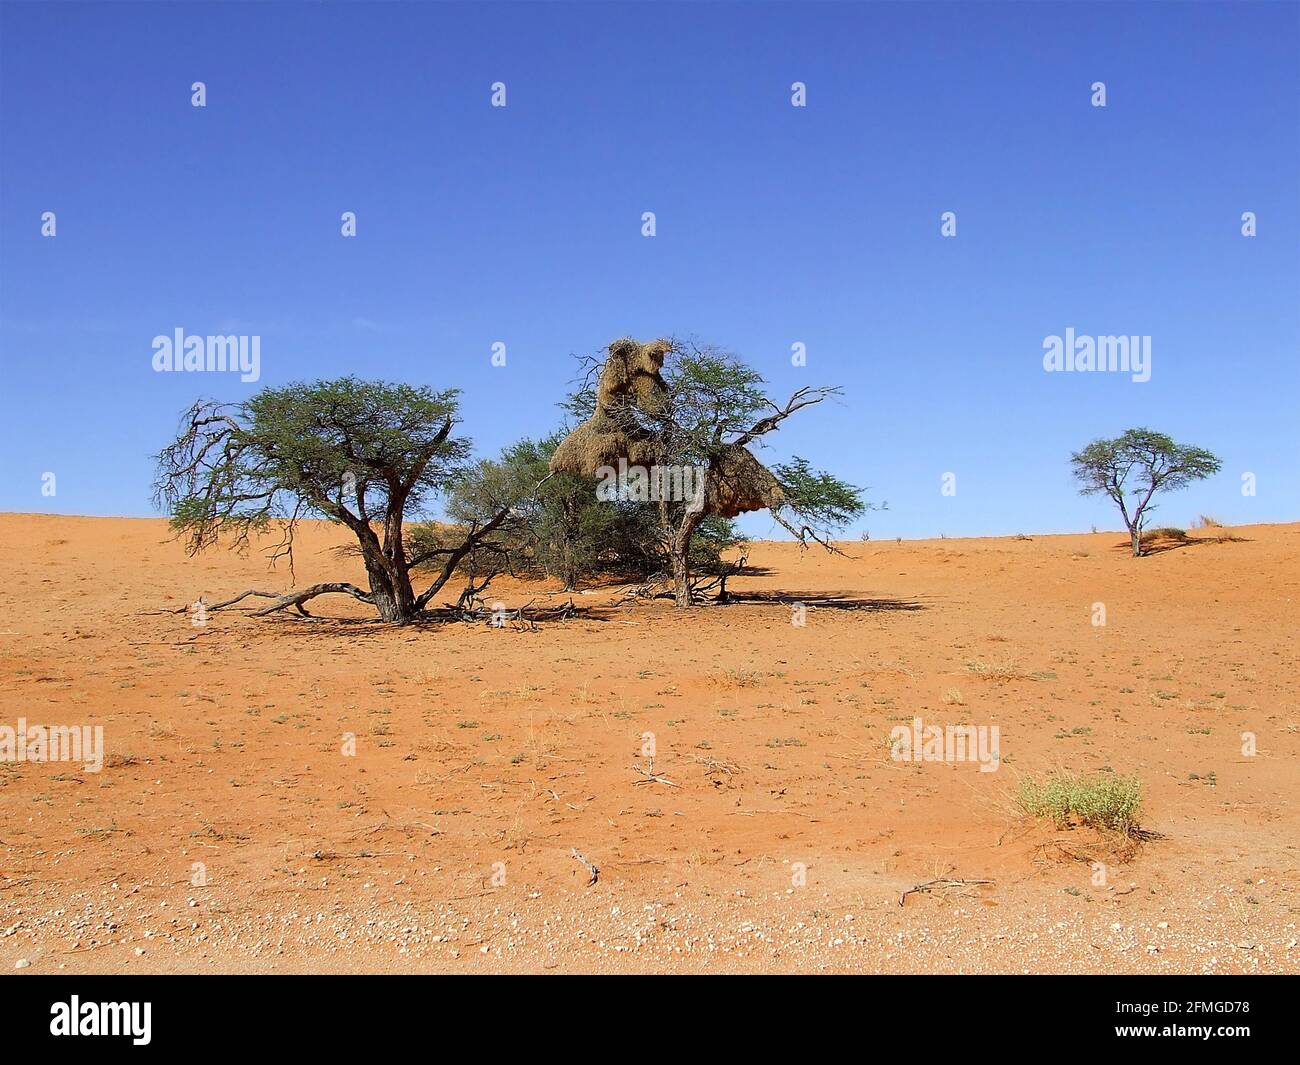 Le Weaver sociable (Philetairus socius) niche dans des Acacia dans le désert de Kalahari, dans la province du Cap Nord, en Afrique du Sud Banque D'Images